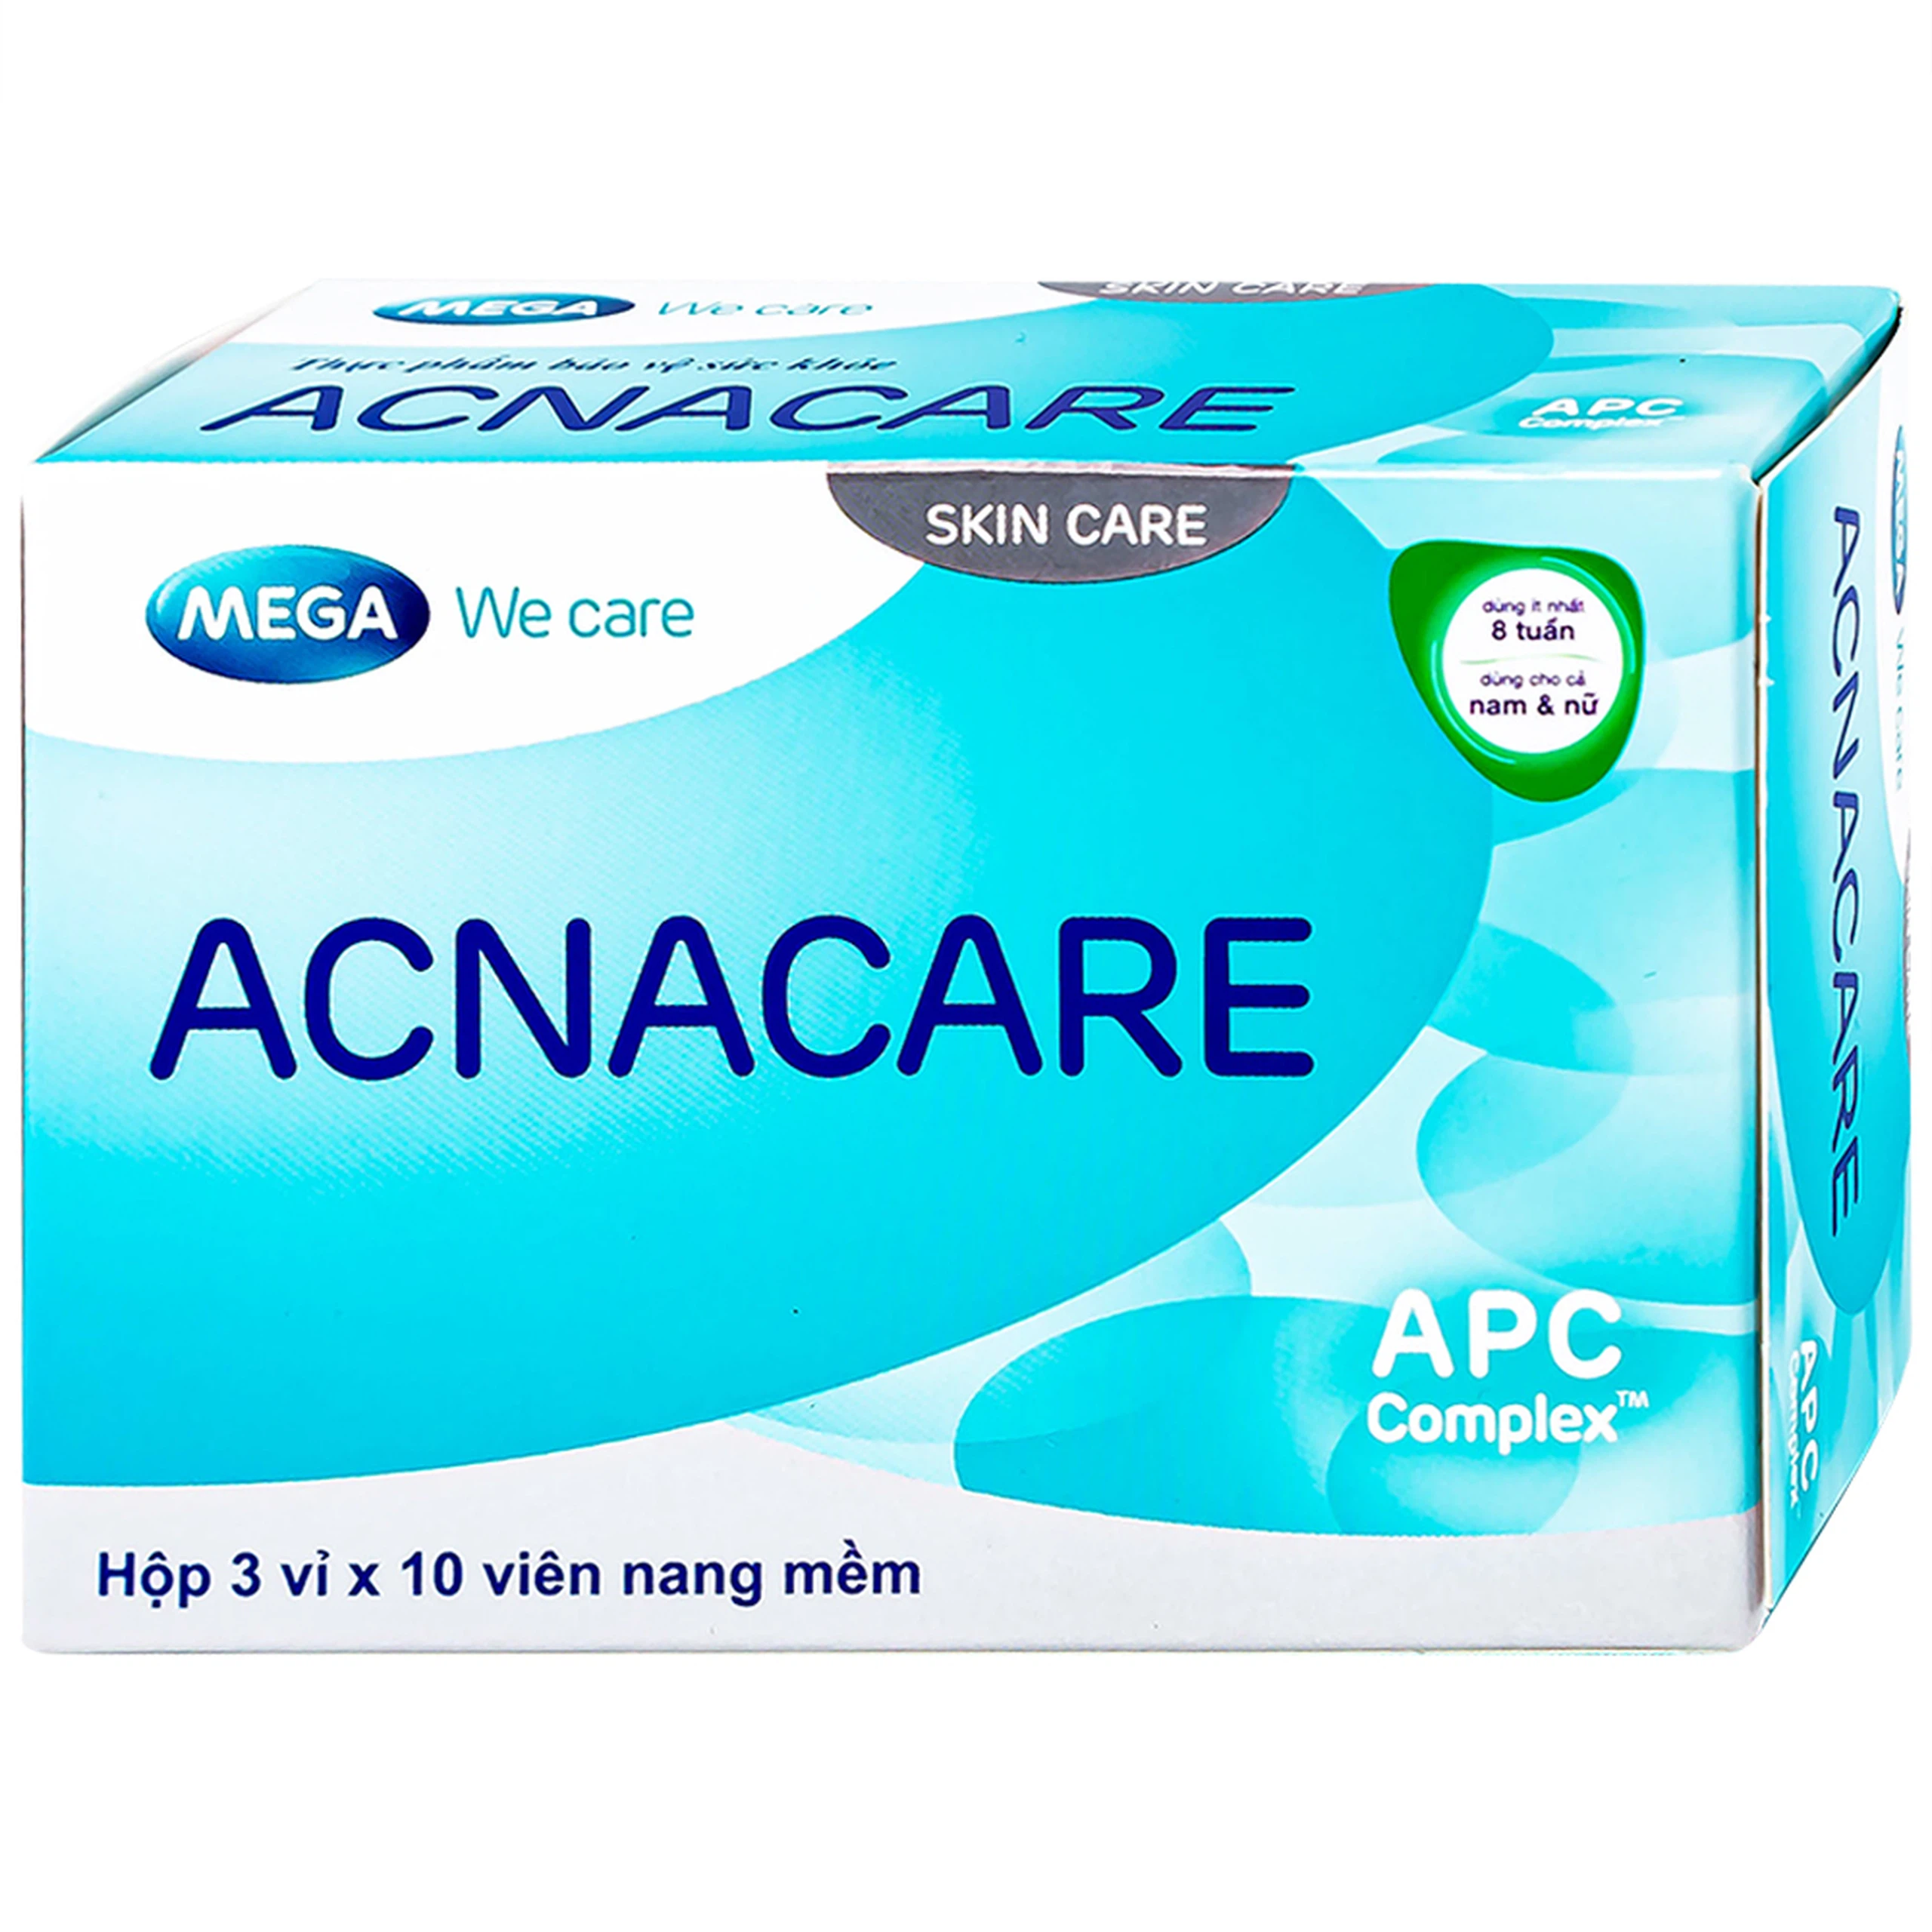 Viên uống Acnacare Mega We Care bổ sung chất chống oxy hóa, ngăn ngừa mụn (3 vỉ x 10 viên)